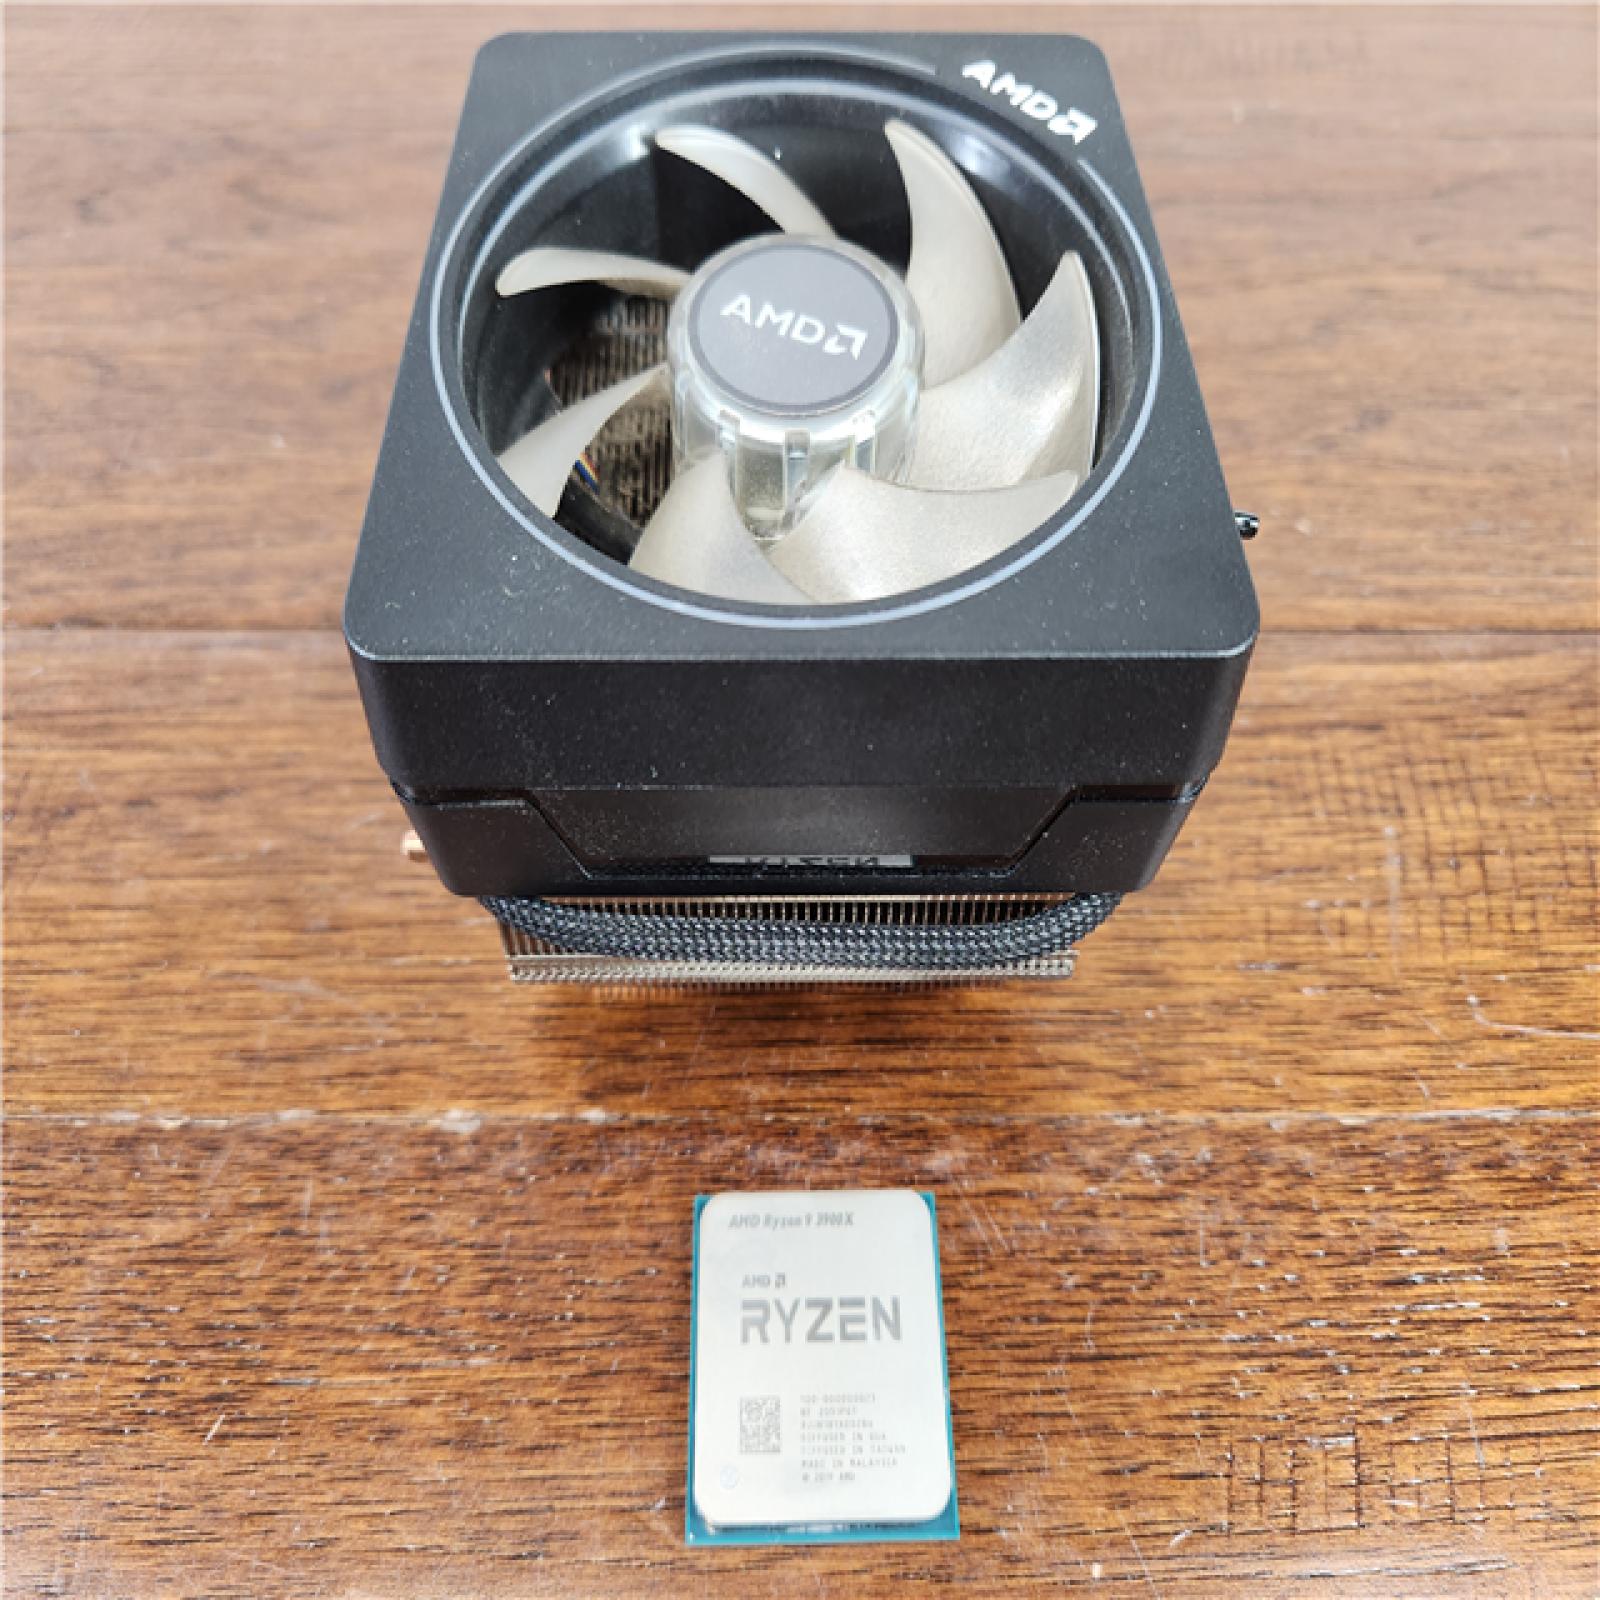 AS-IS AMD Ryzen 9 3900X (12-core, 24-Thread) 3.8 GHz, Socket AM4 Unlocked Desktop Processor